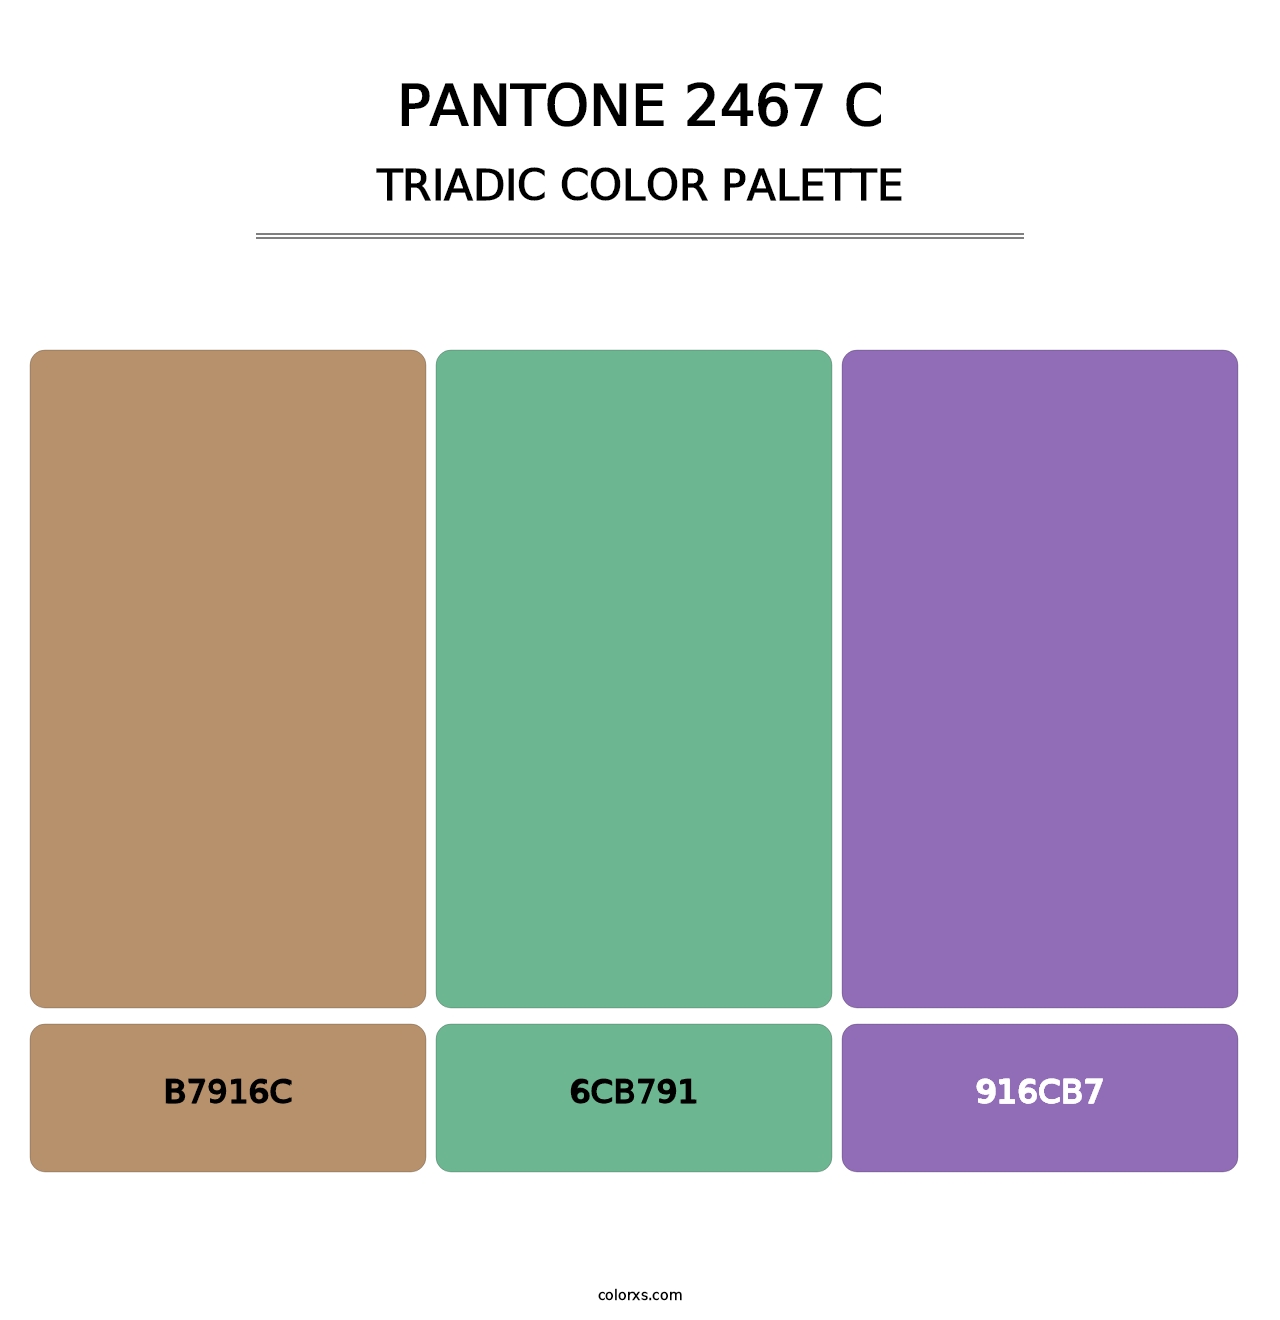 PANTONE 2467 C - Triadic Color Palette